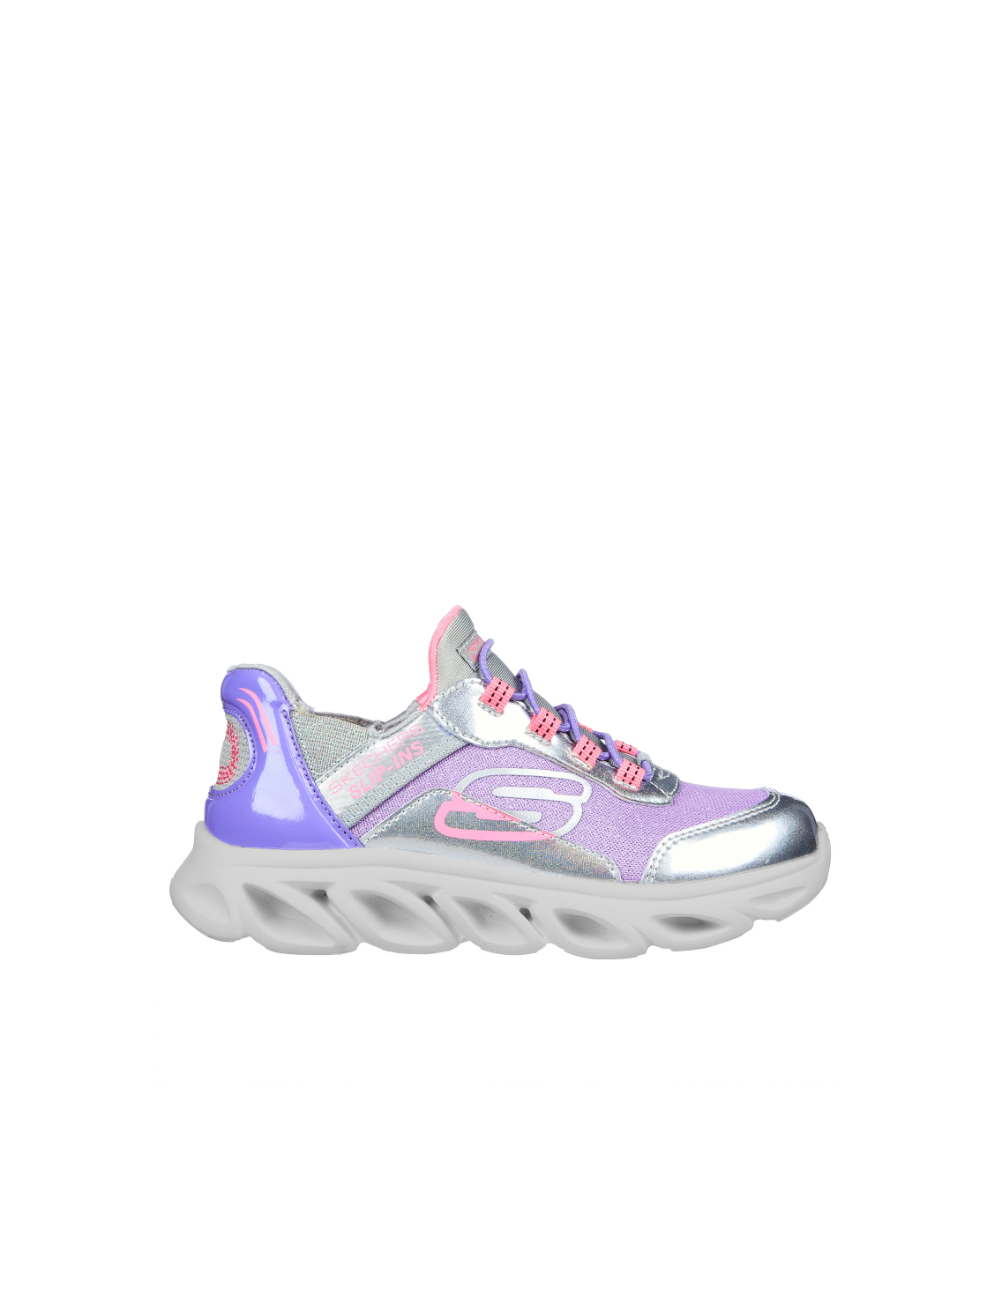 Zapatillas deportivas sin cordones con purpurina para niñas pequeñas